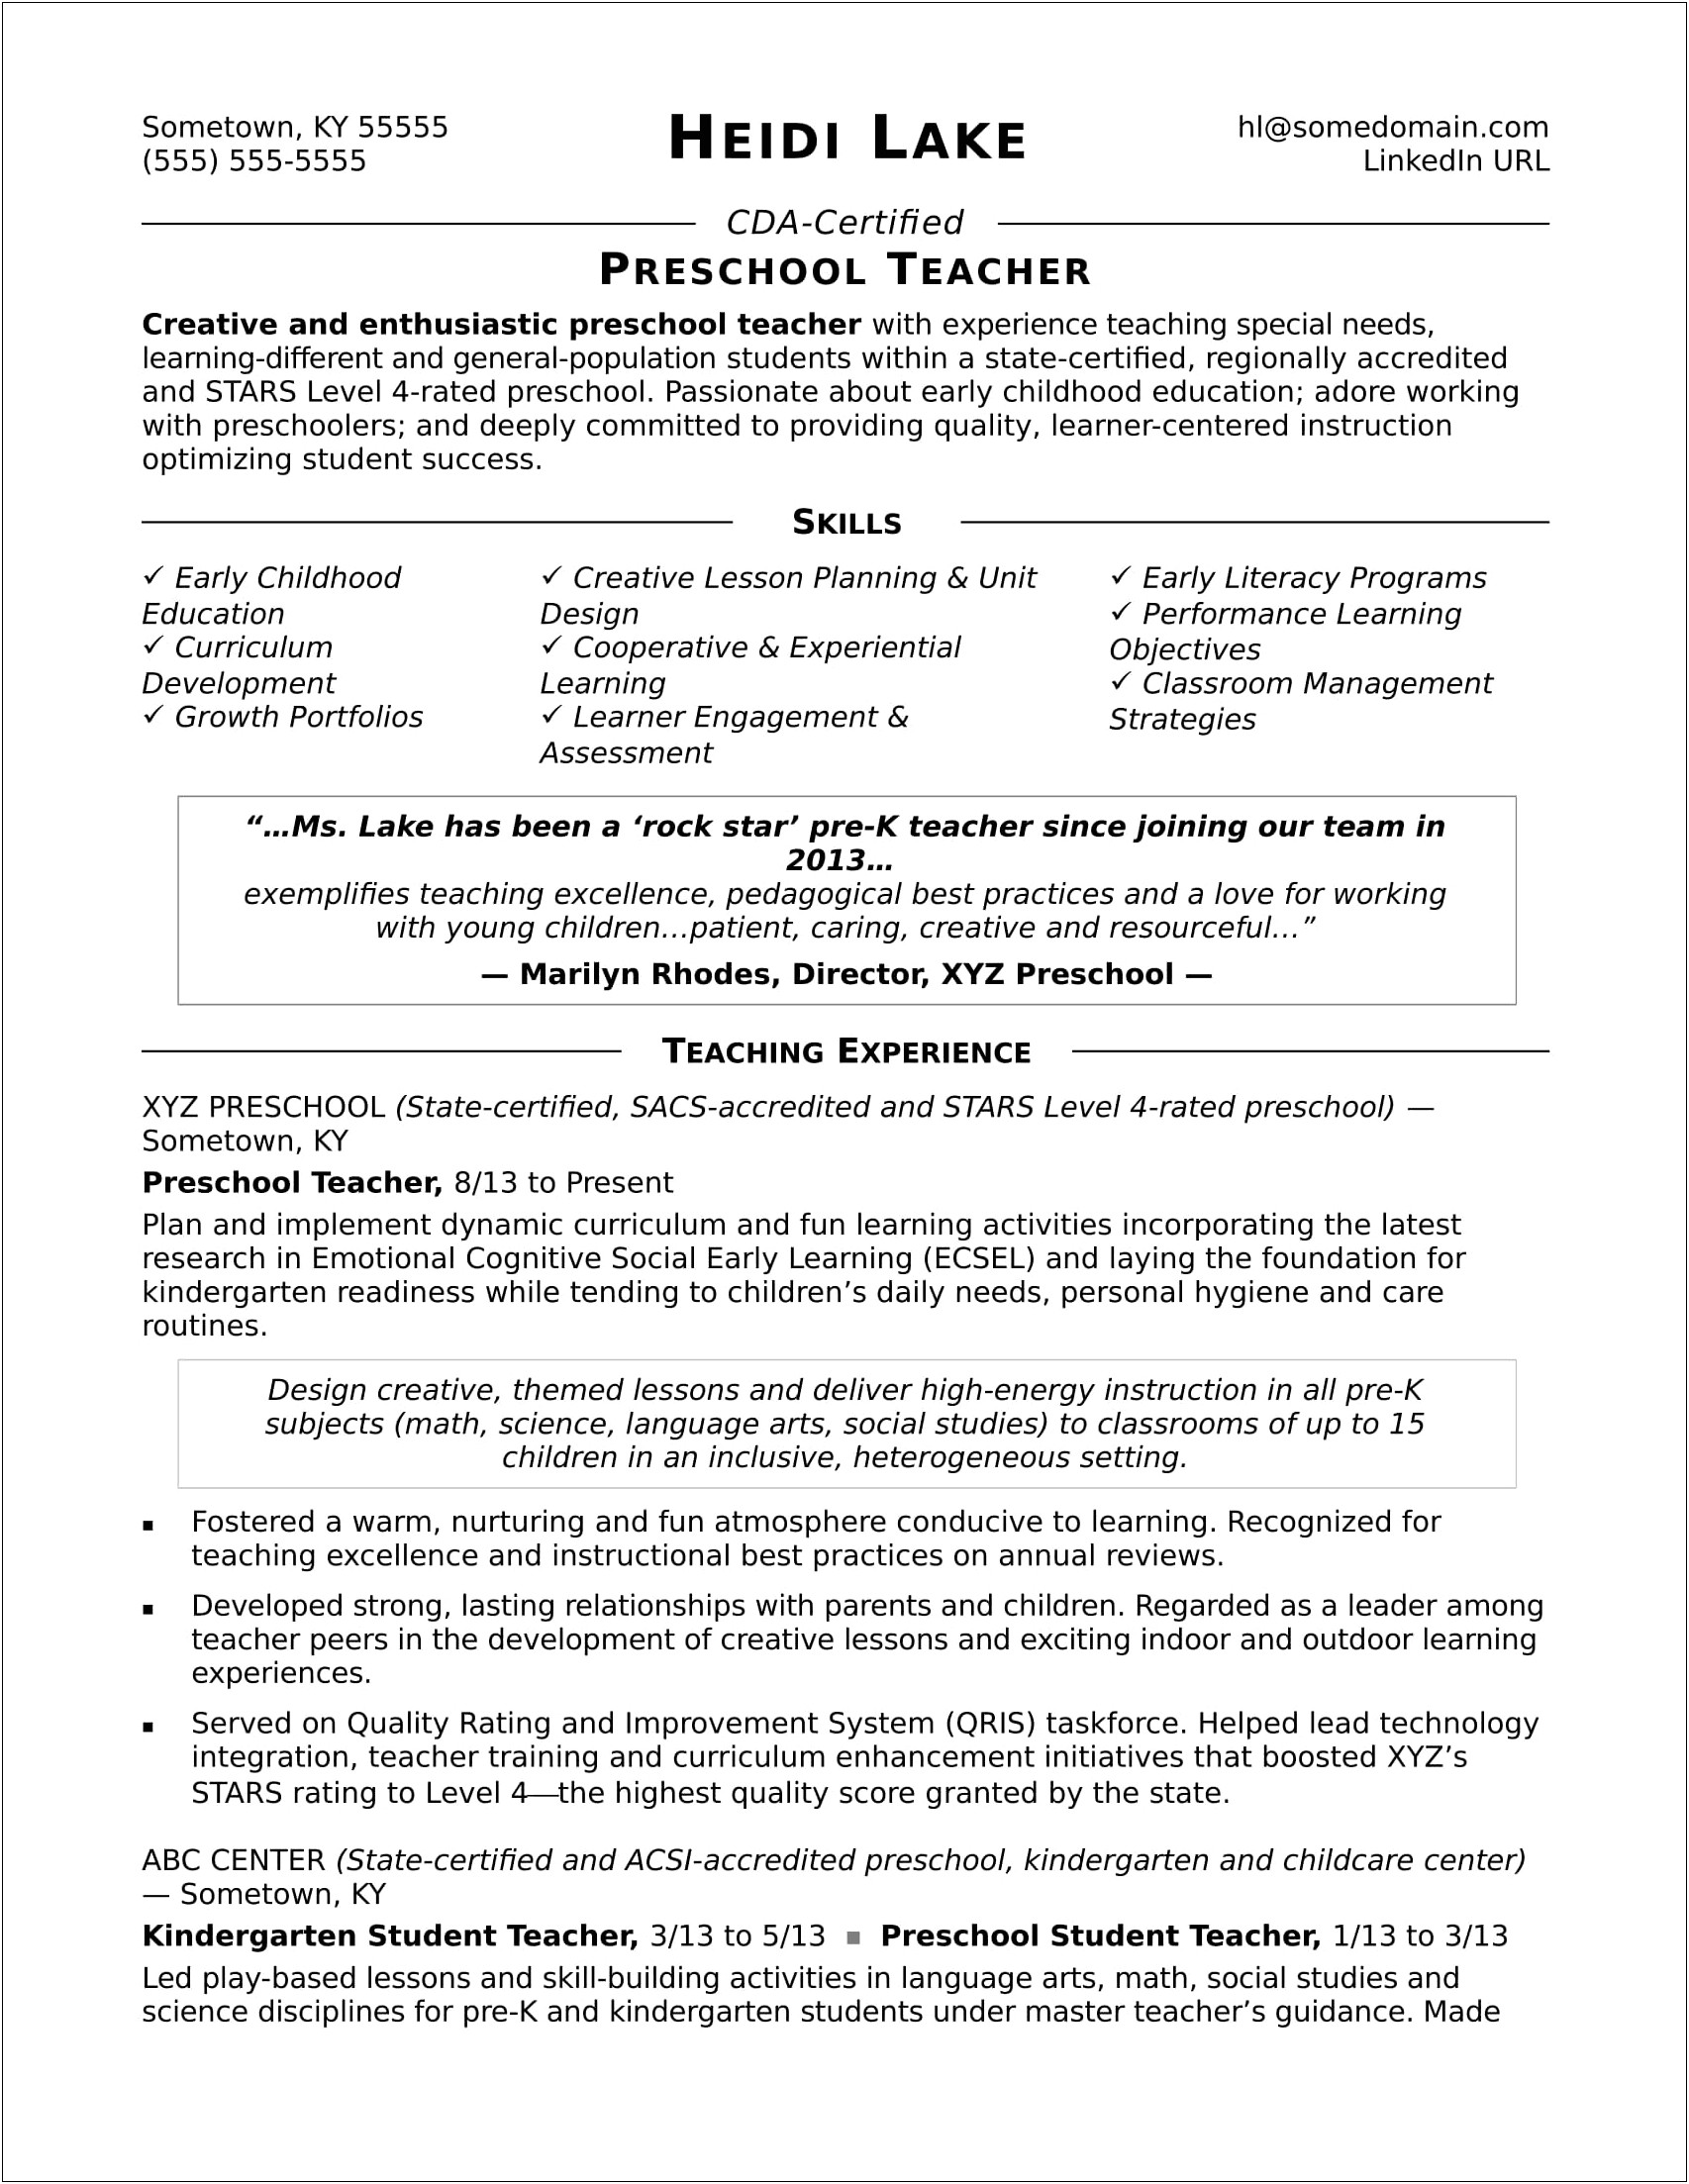 Preschool Teacher Job Duties For A Resume